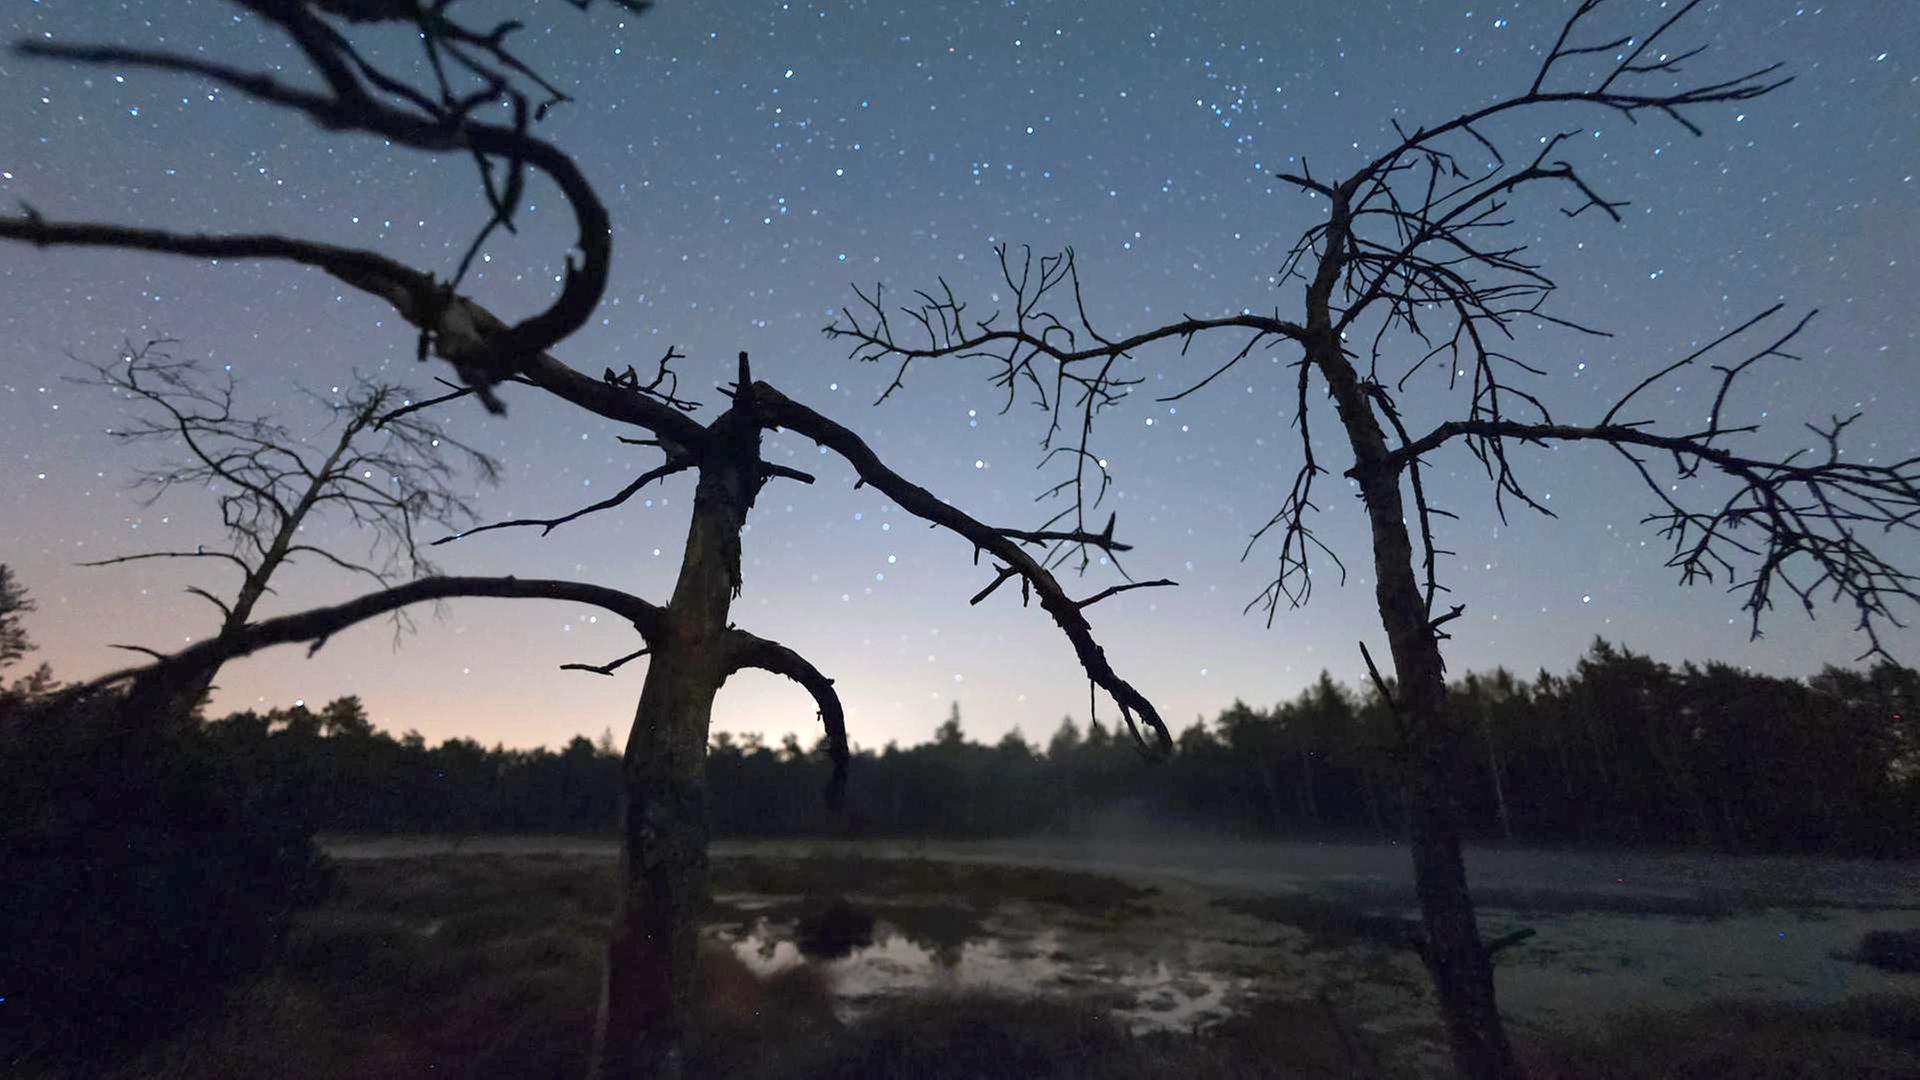 Kahle Bäume im Vordergrund, Sternenhimmel im Hintergrund